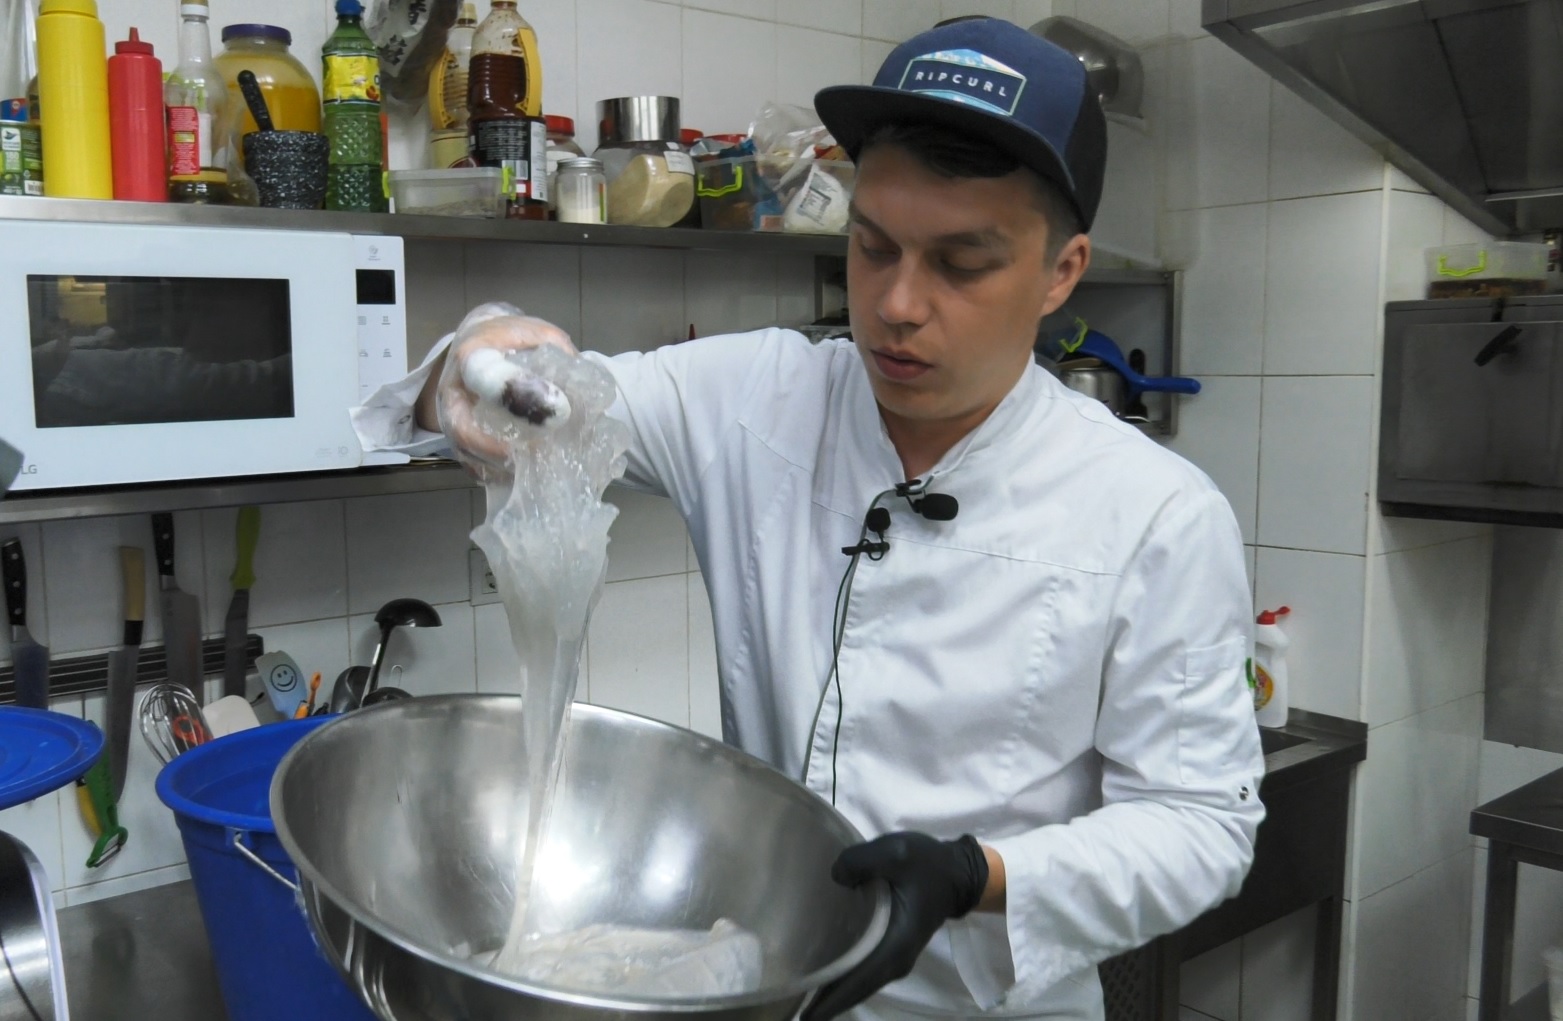 На курортах Азовского моря начали готовить и есть медуз: фото и рецепт вкуснятины